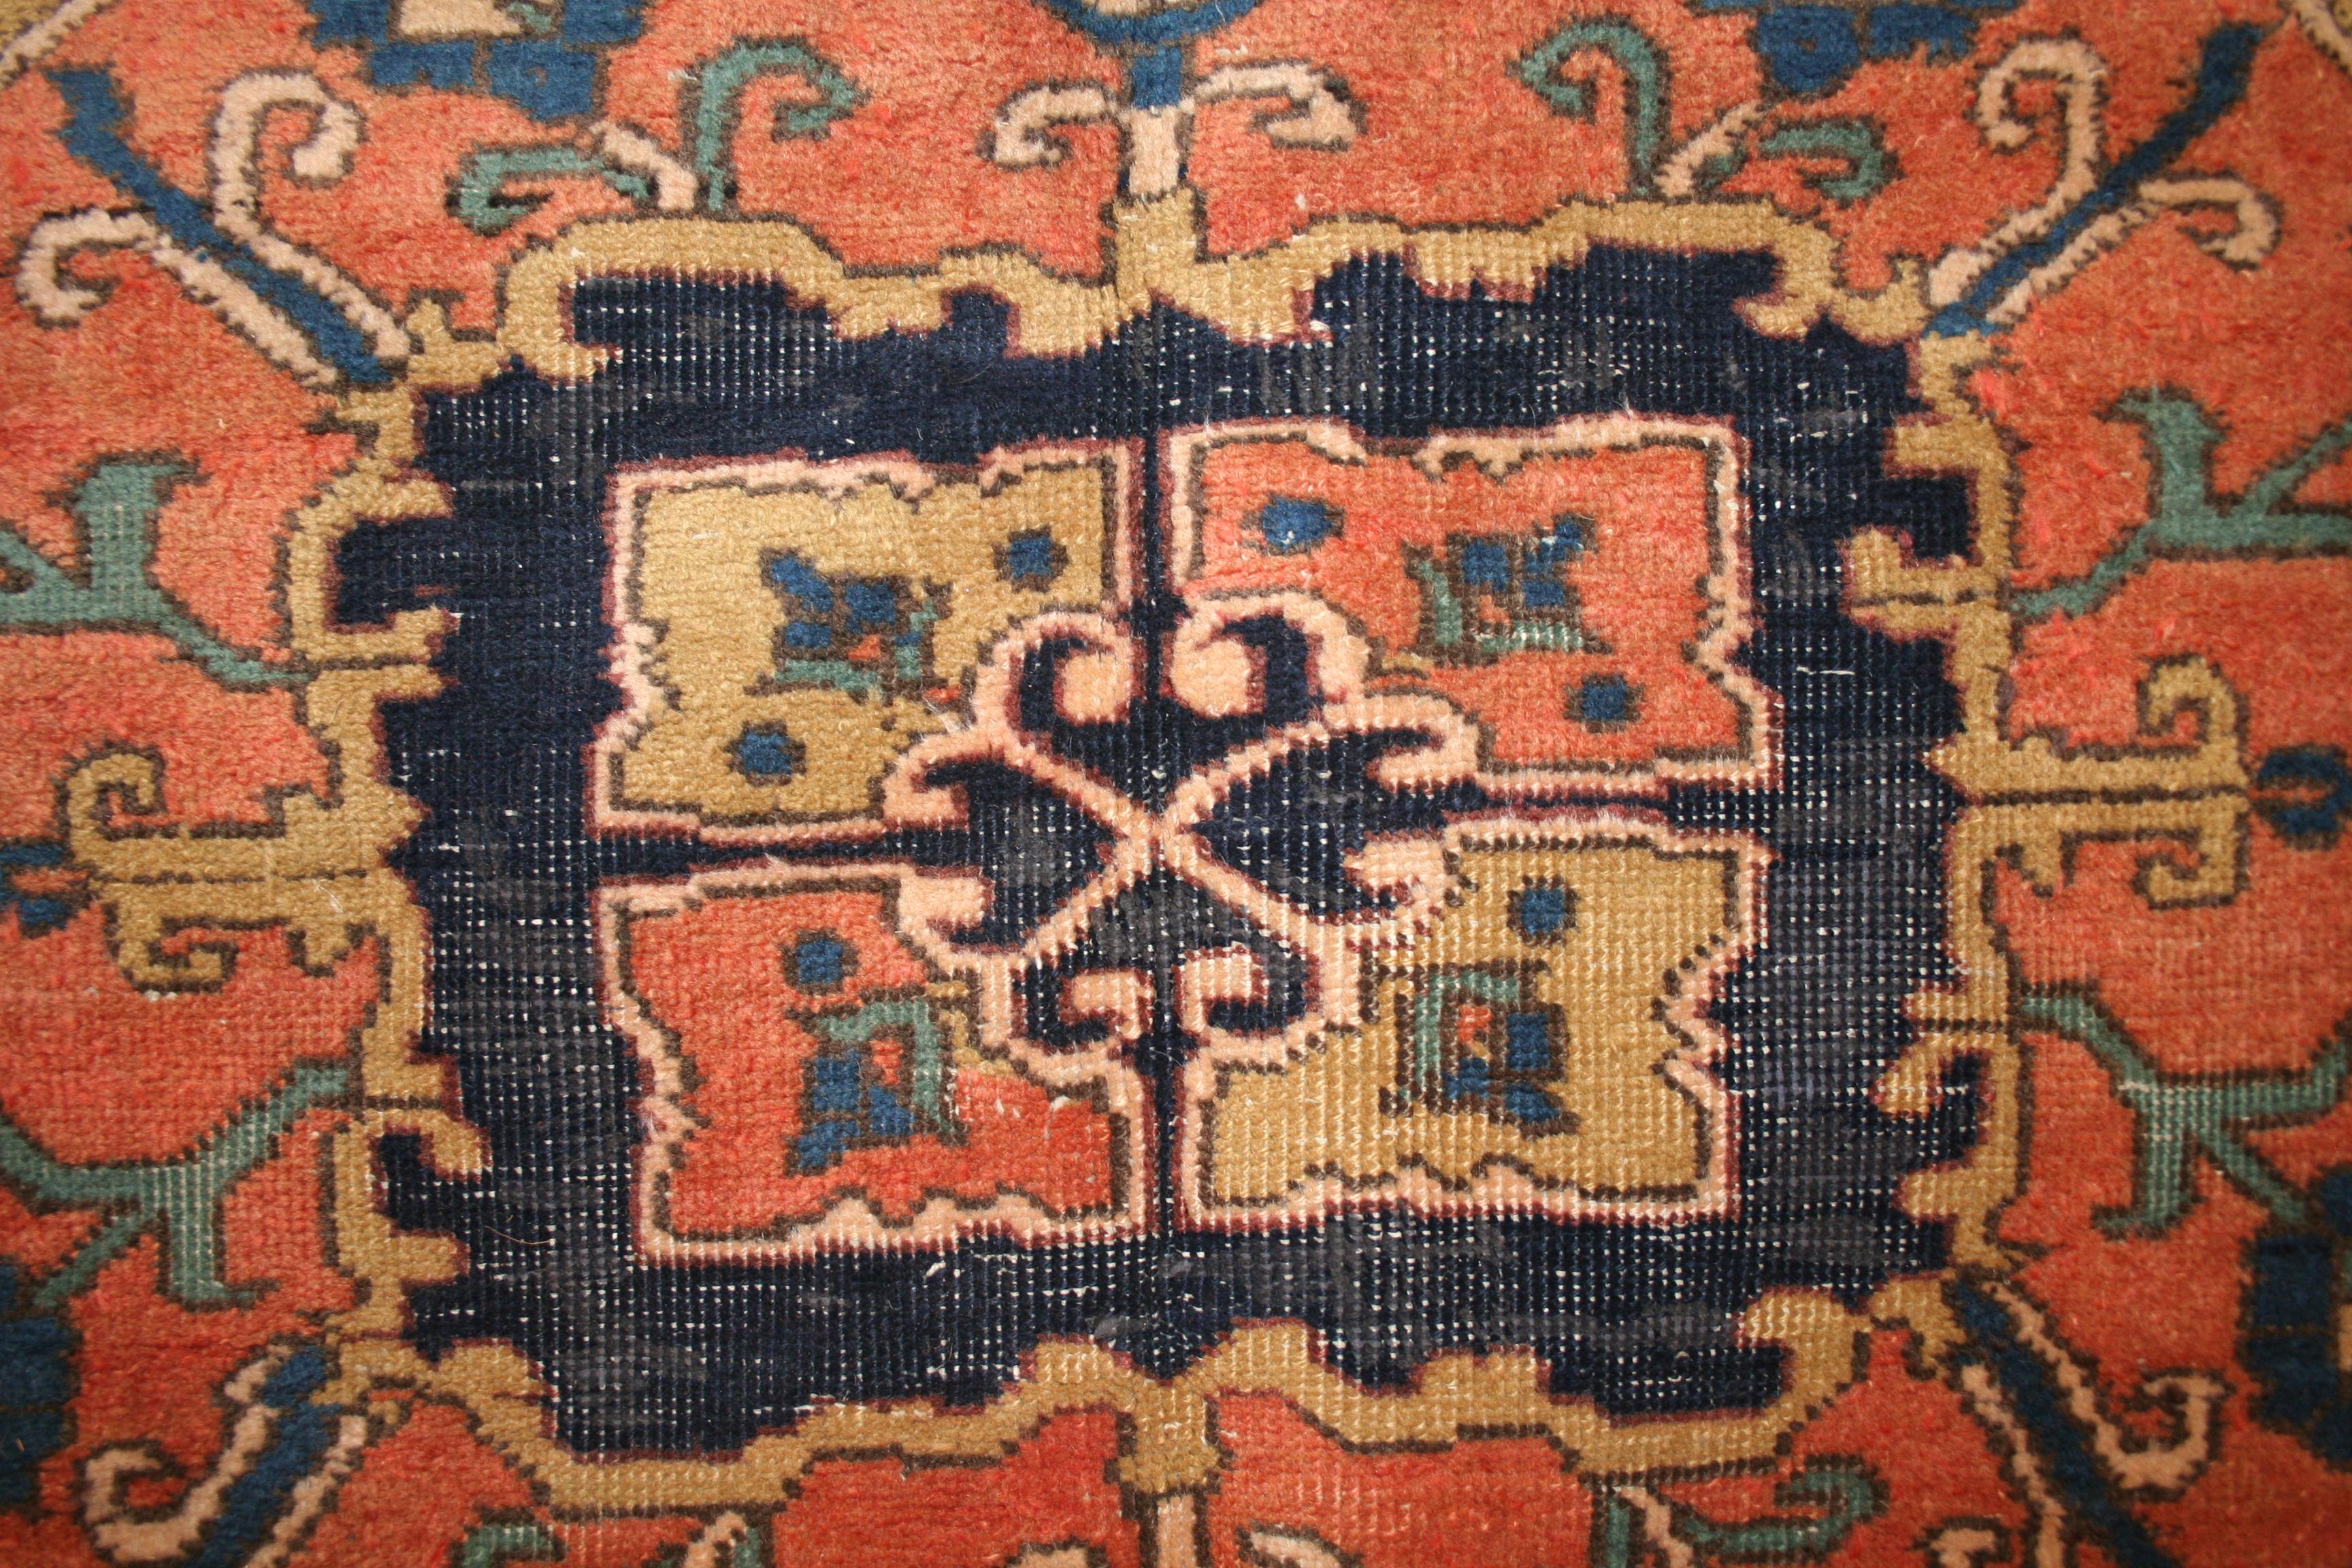 Das Muster wurde fast wortwörtlich von den früheren Heriz-Serapi-Teppichen übernommen, wobei sich das dramatische rosa Medaillon und die Anhänger wirkungsvoll vom elfenbeinfarbenen Hintergrund abheben. Dieses Design repräsentiert den typischen Stil